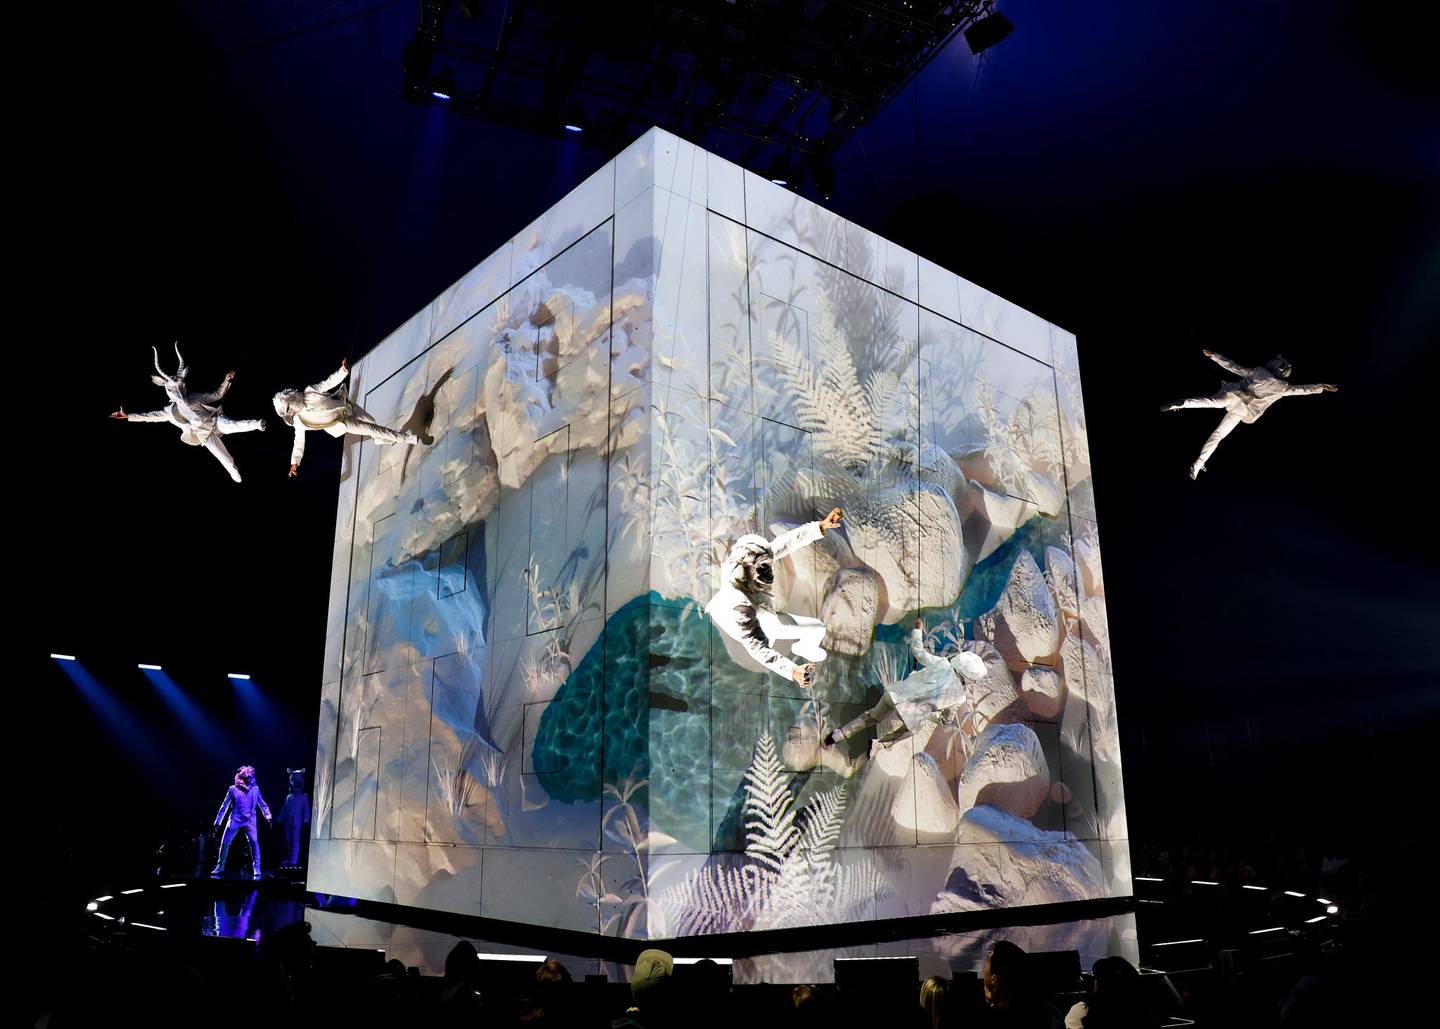 Espectáculo Echo, que ahora presenta el Cirque du Soleil en Atlanta (Estados Unidos). Es un espectáculo acerca del delicado balance entre los seres humanos y la naturaleza, así como el poder de las acciones para modelar el futuro. Cuenta con 52 artistas de 19 nacionalidades. Circo del Sol. Crédito Jean-François Savaria/Cirque du Soleil 2023.